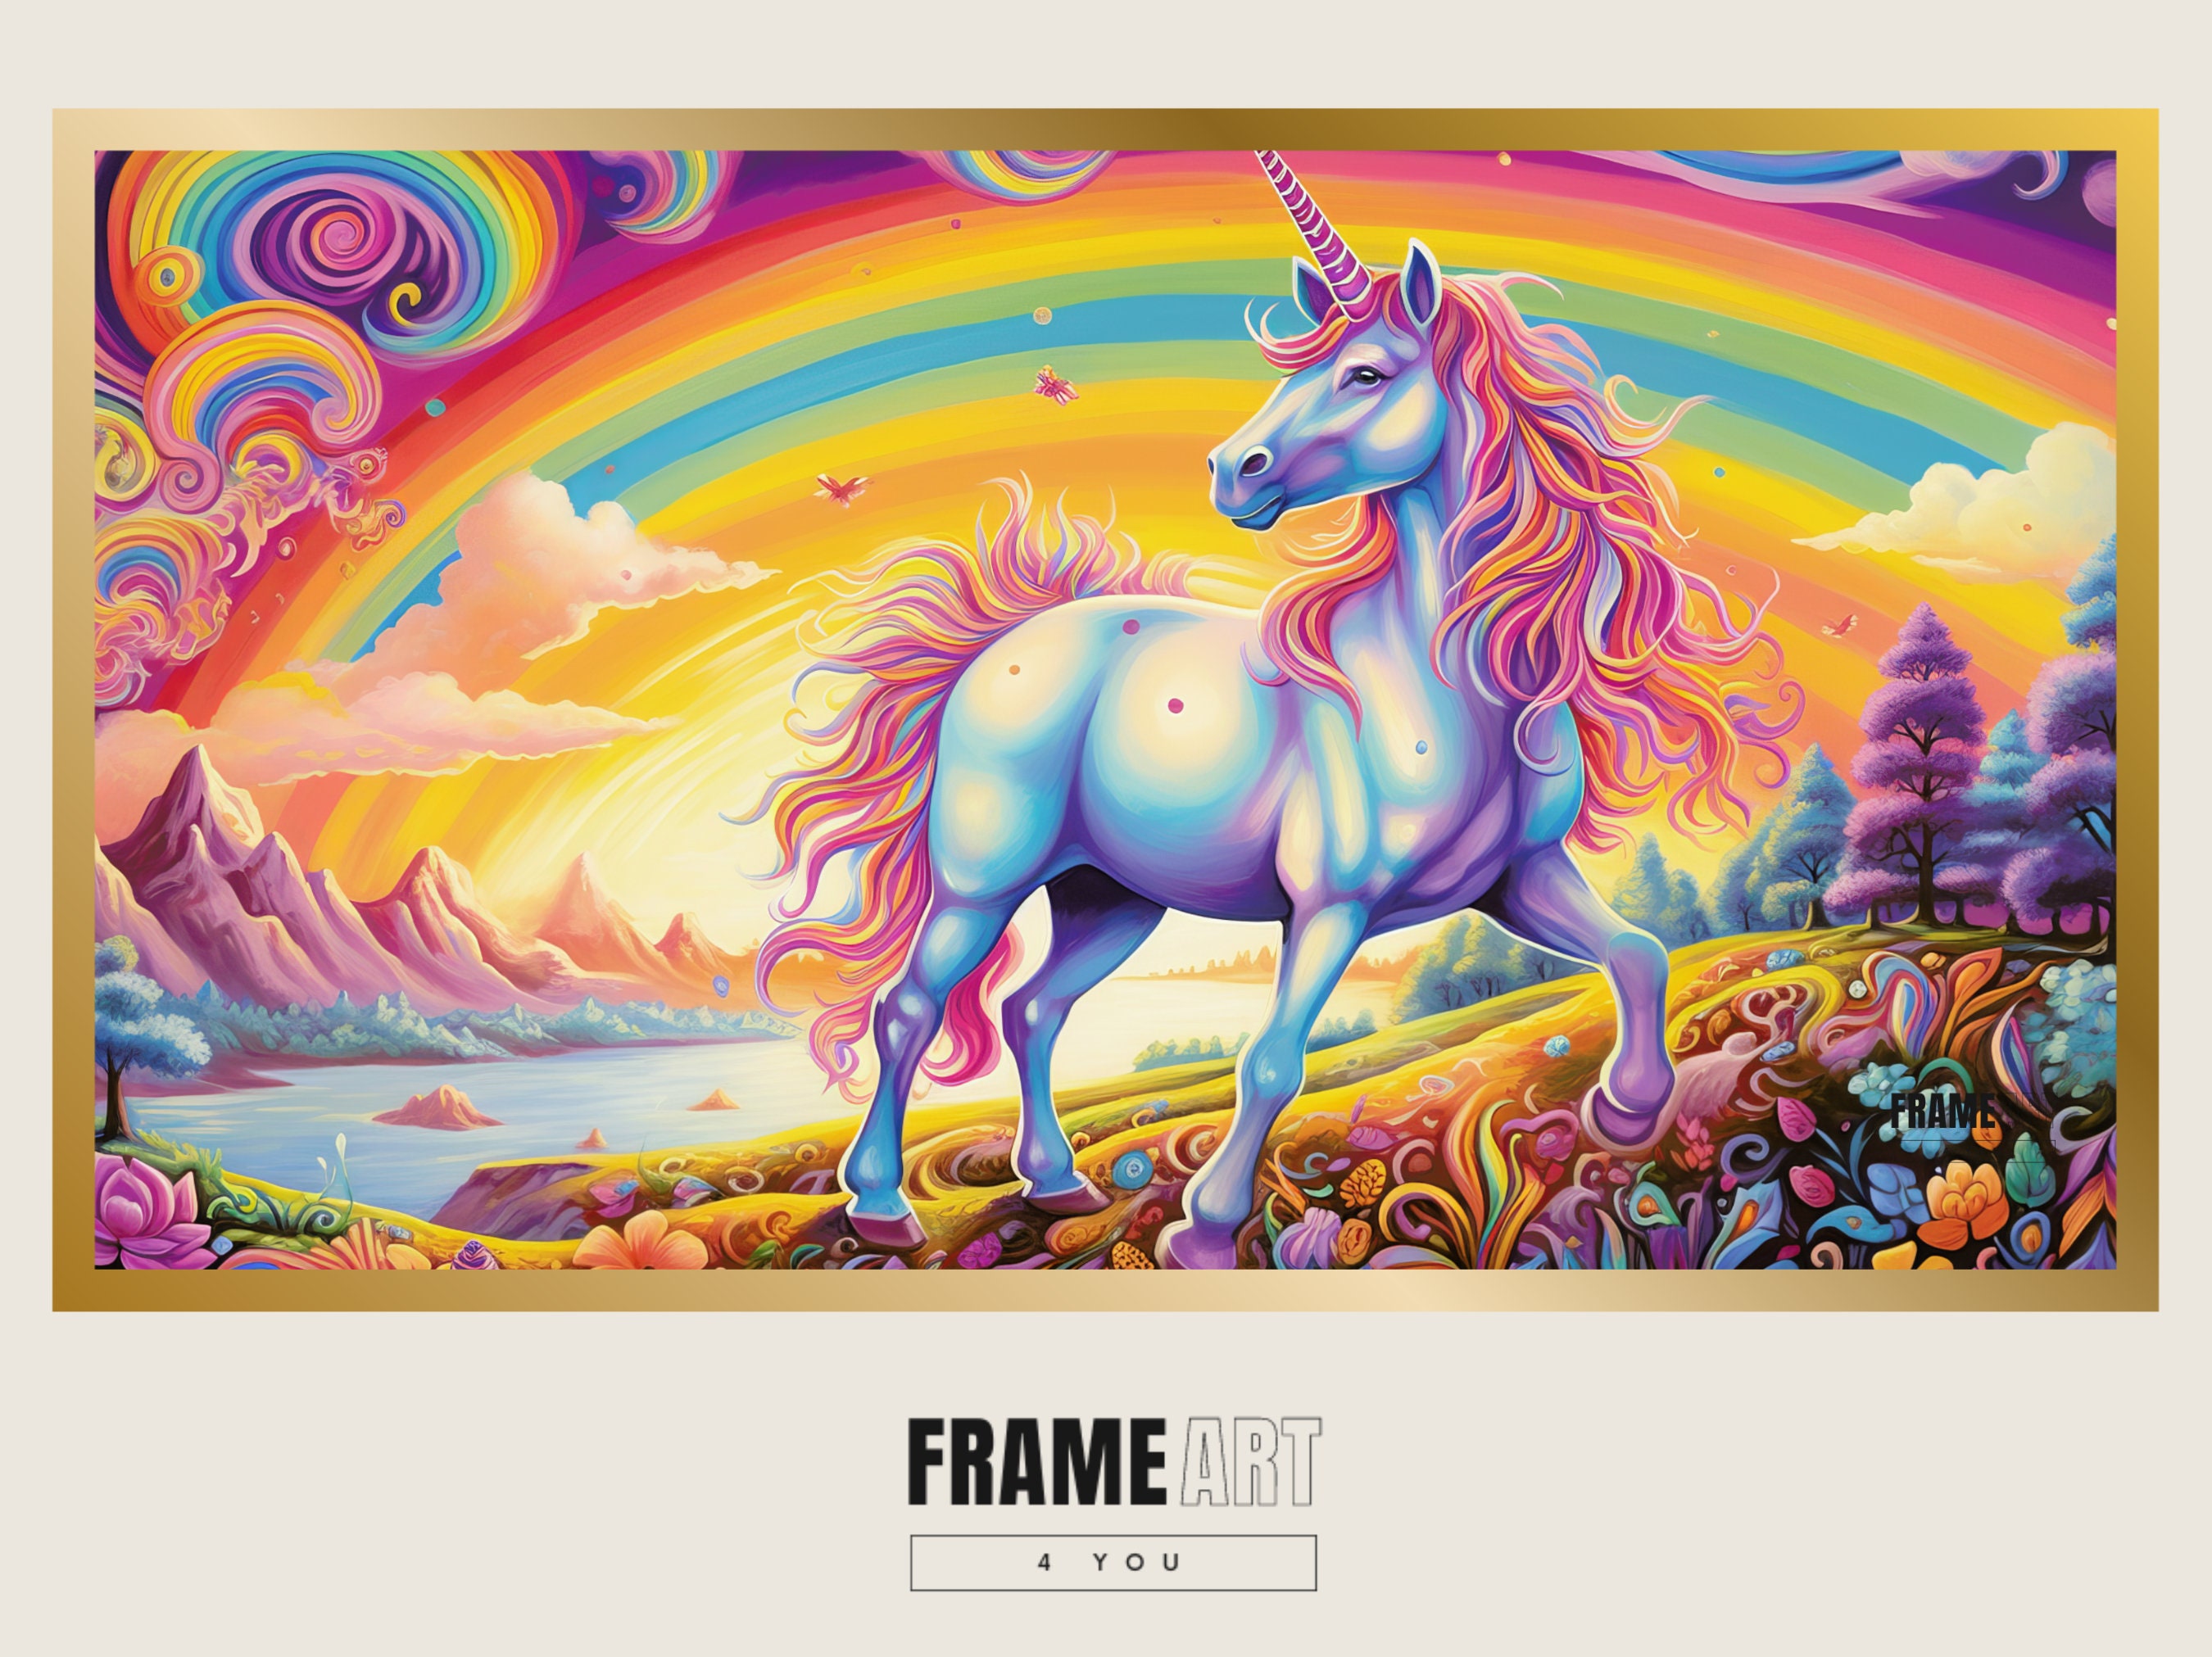 Lisa Frank Party Invitations Rainbow Unicorn Fantasy Horse Birthday Set of  8